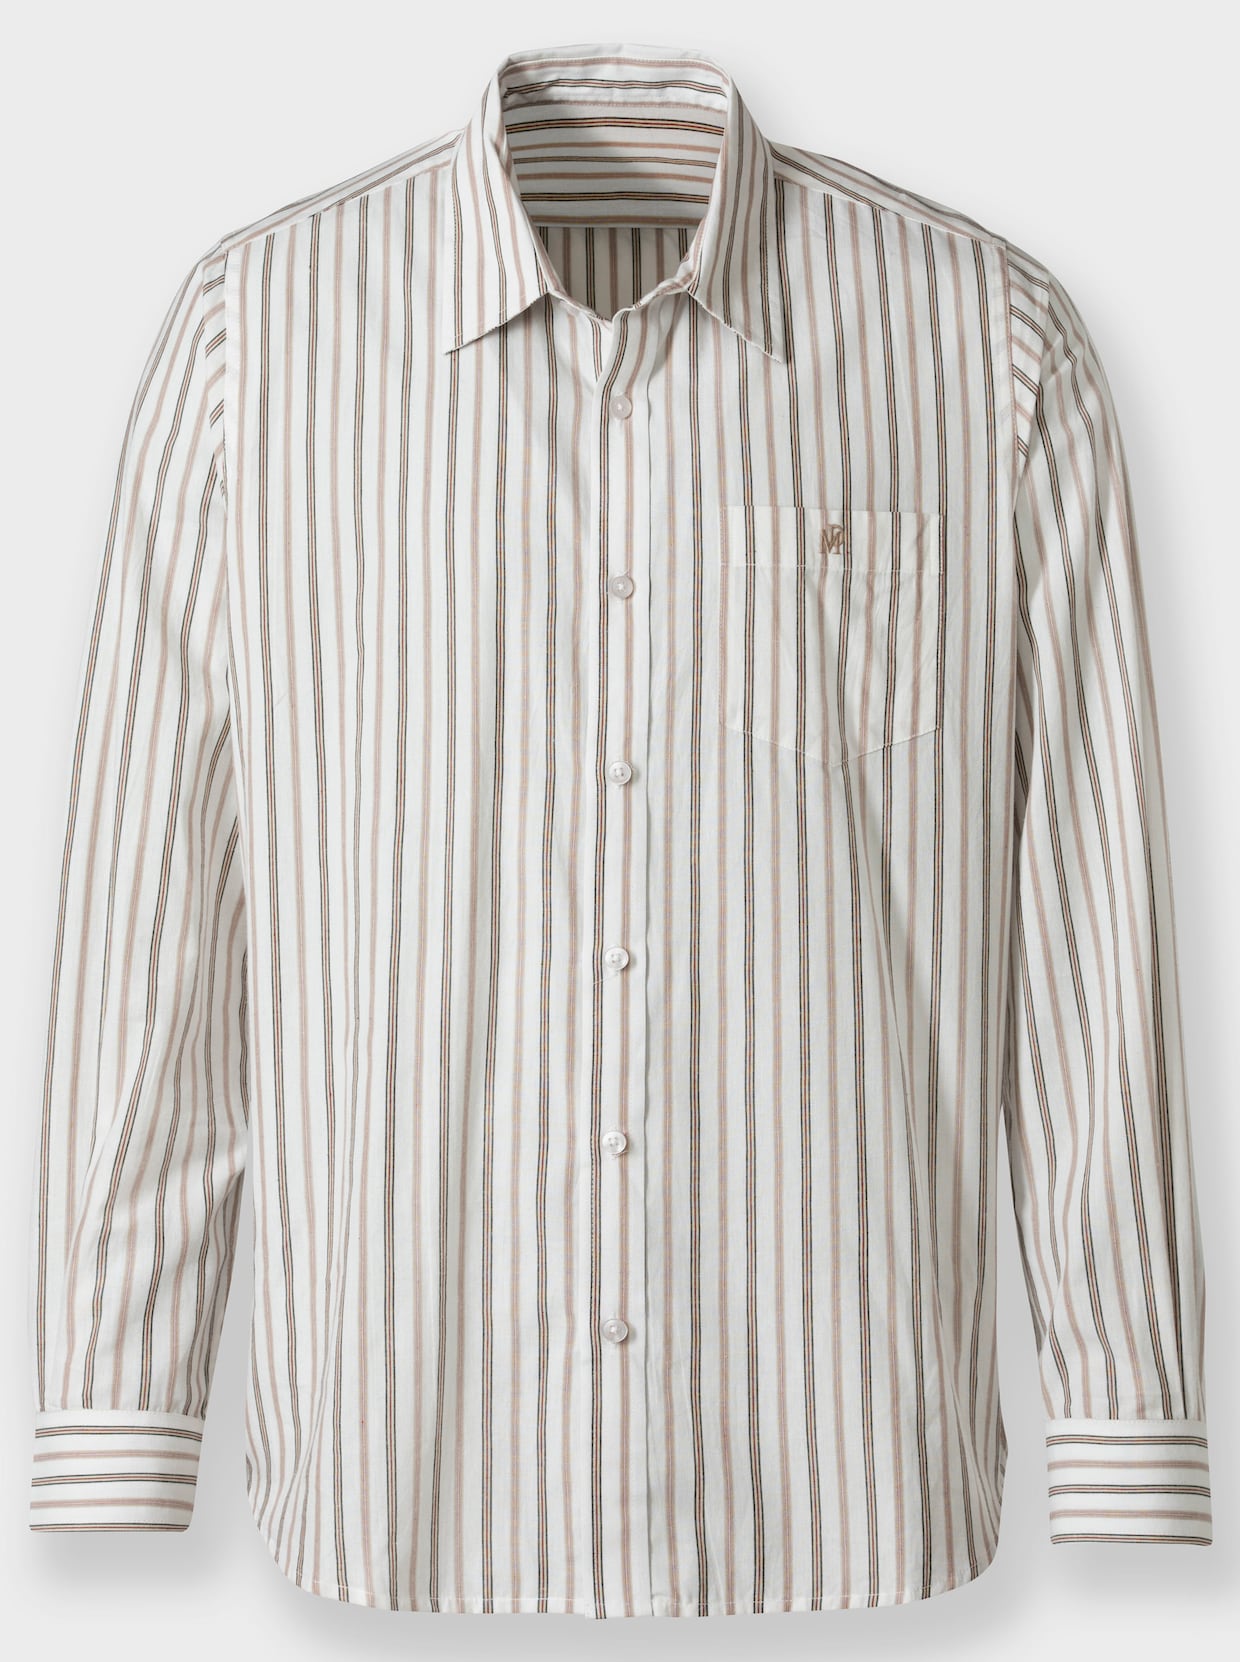 Marco Donati Hemd met lange mouwen - sesam/wit gestreept